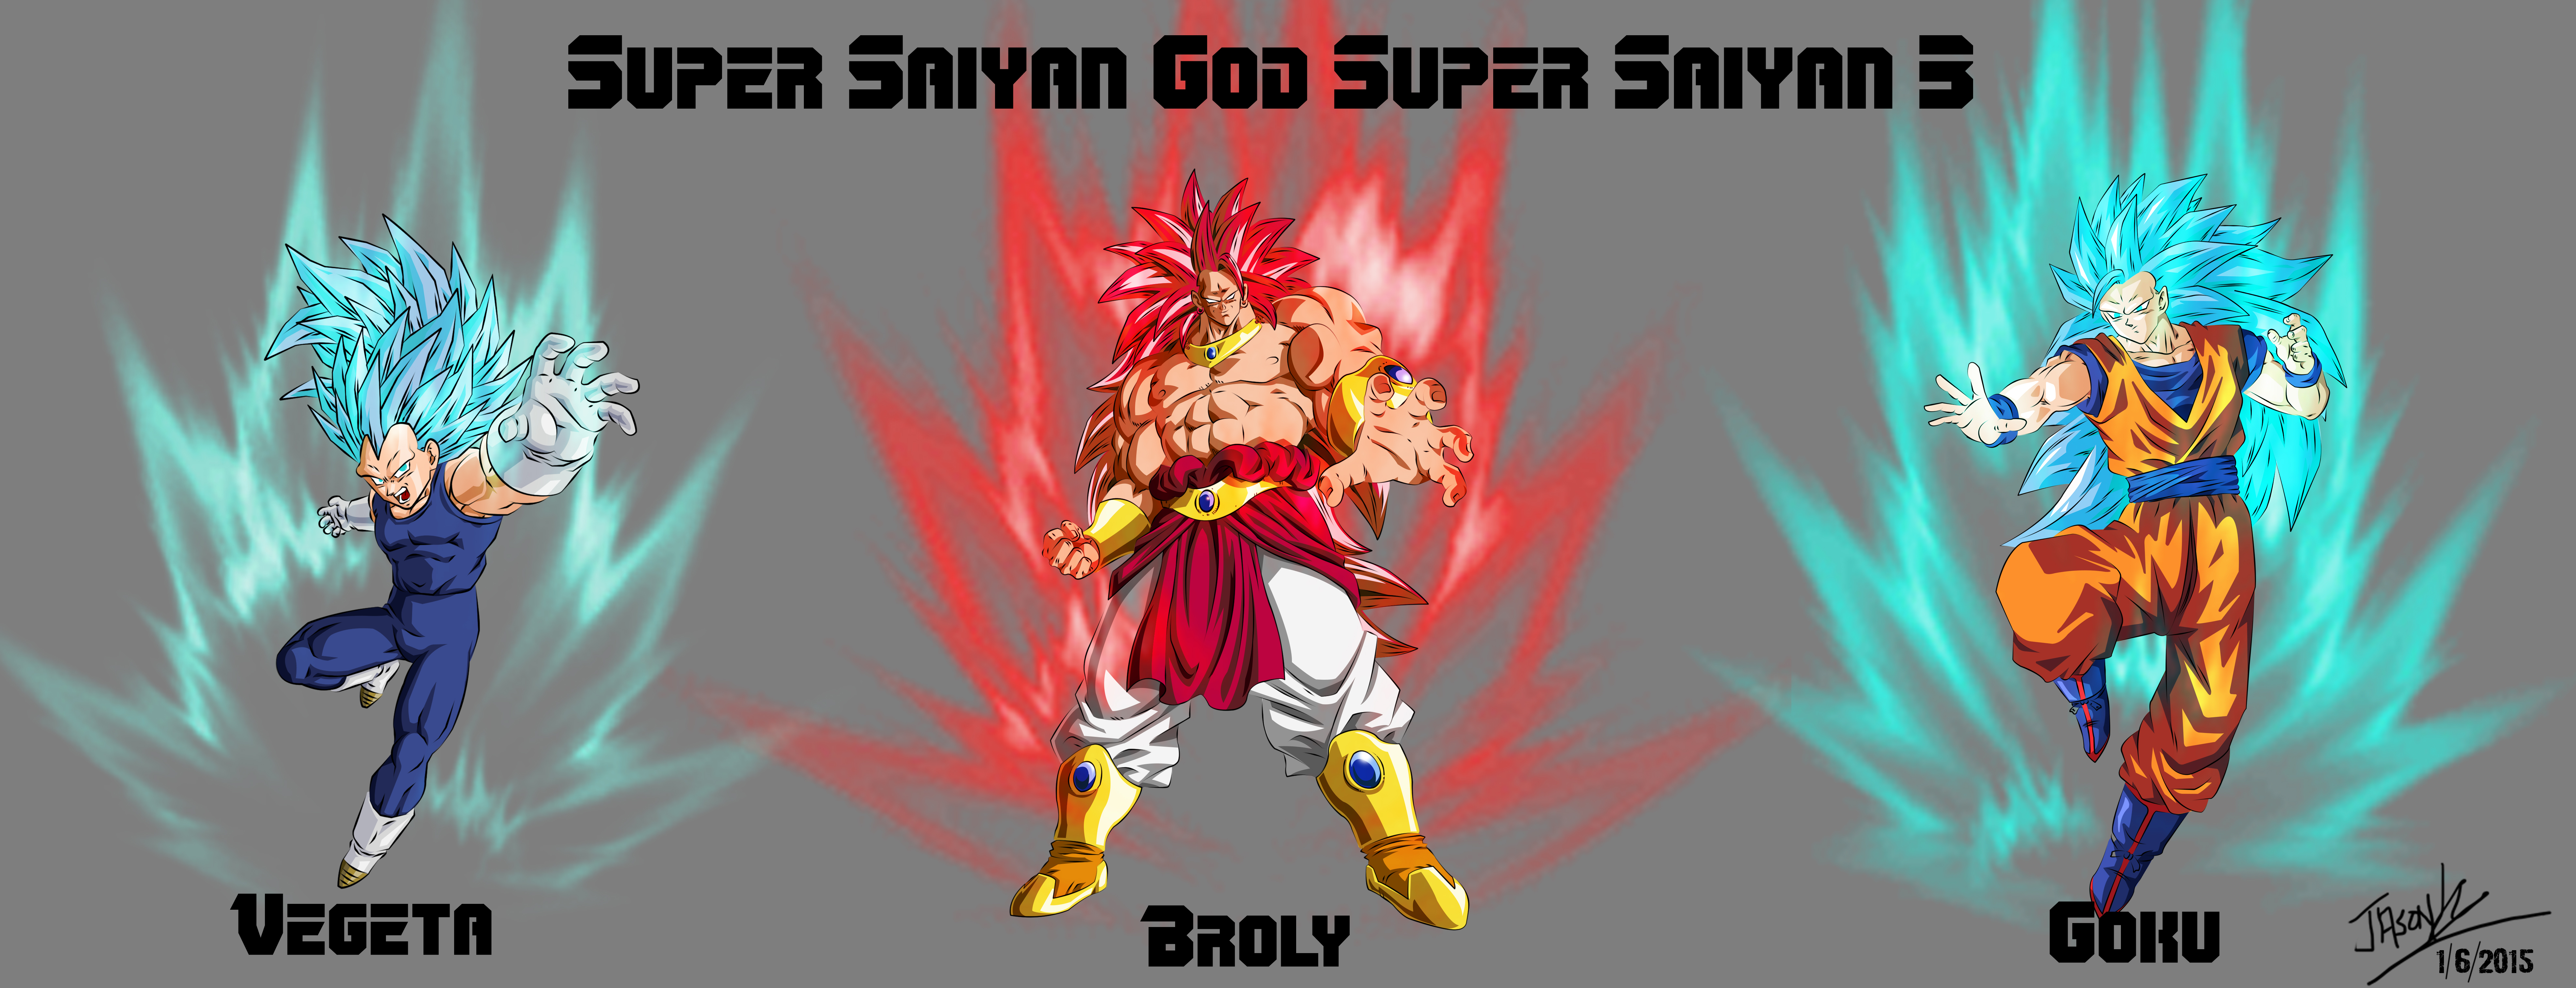 Legendary Super Saiyan God Super Saiyan